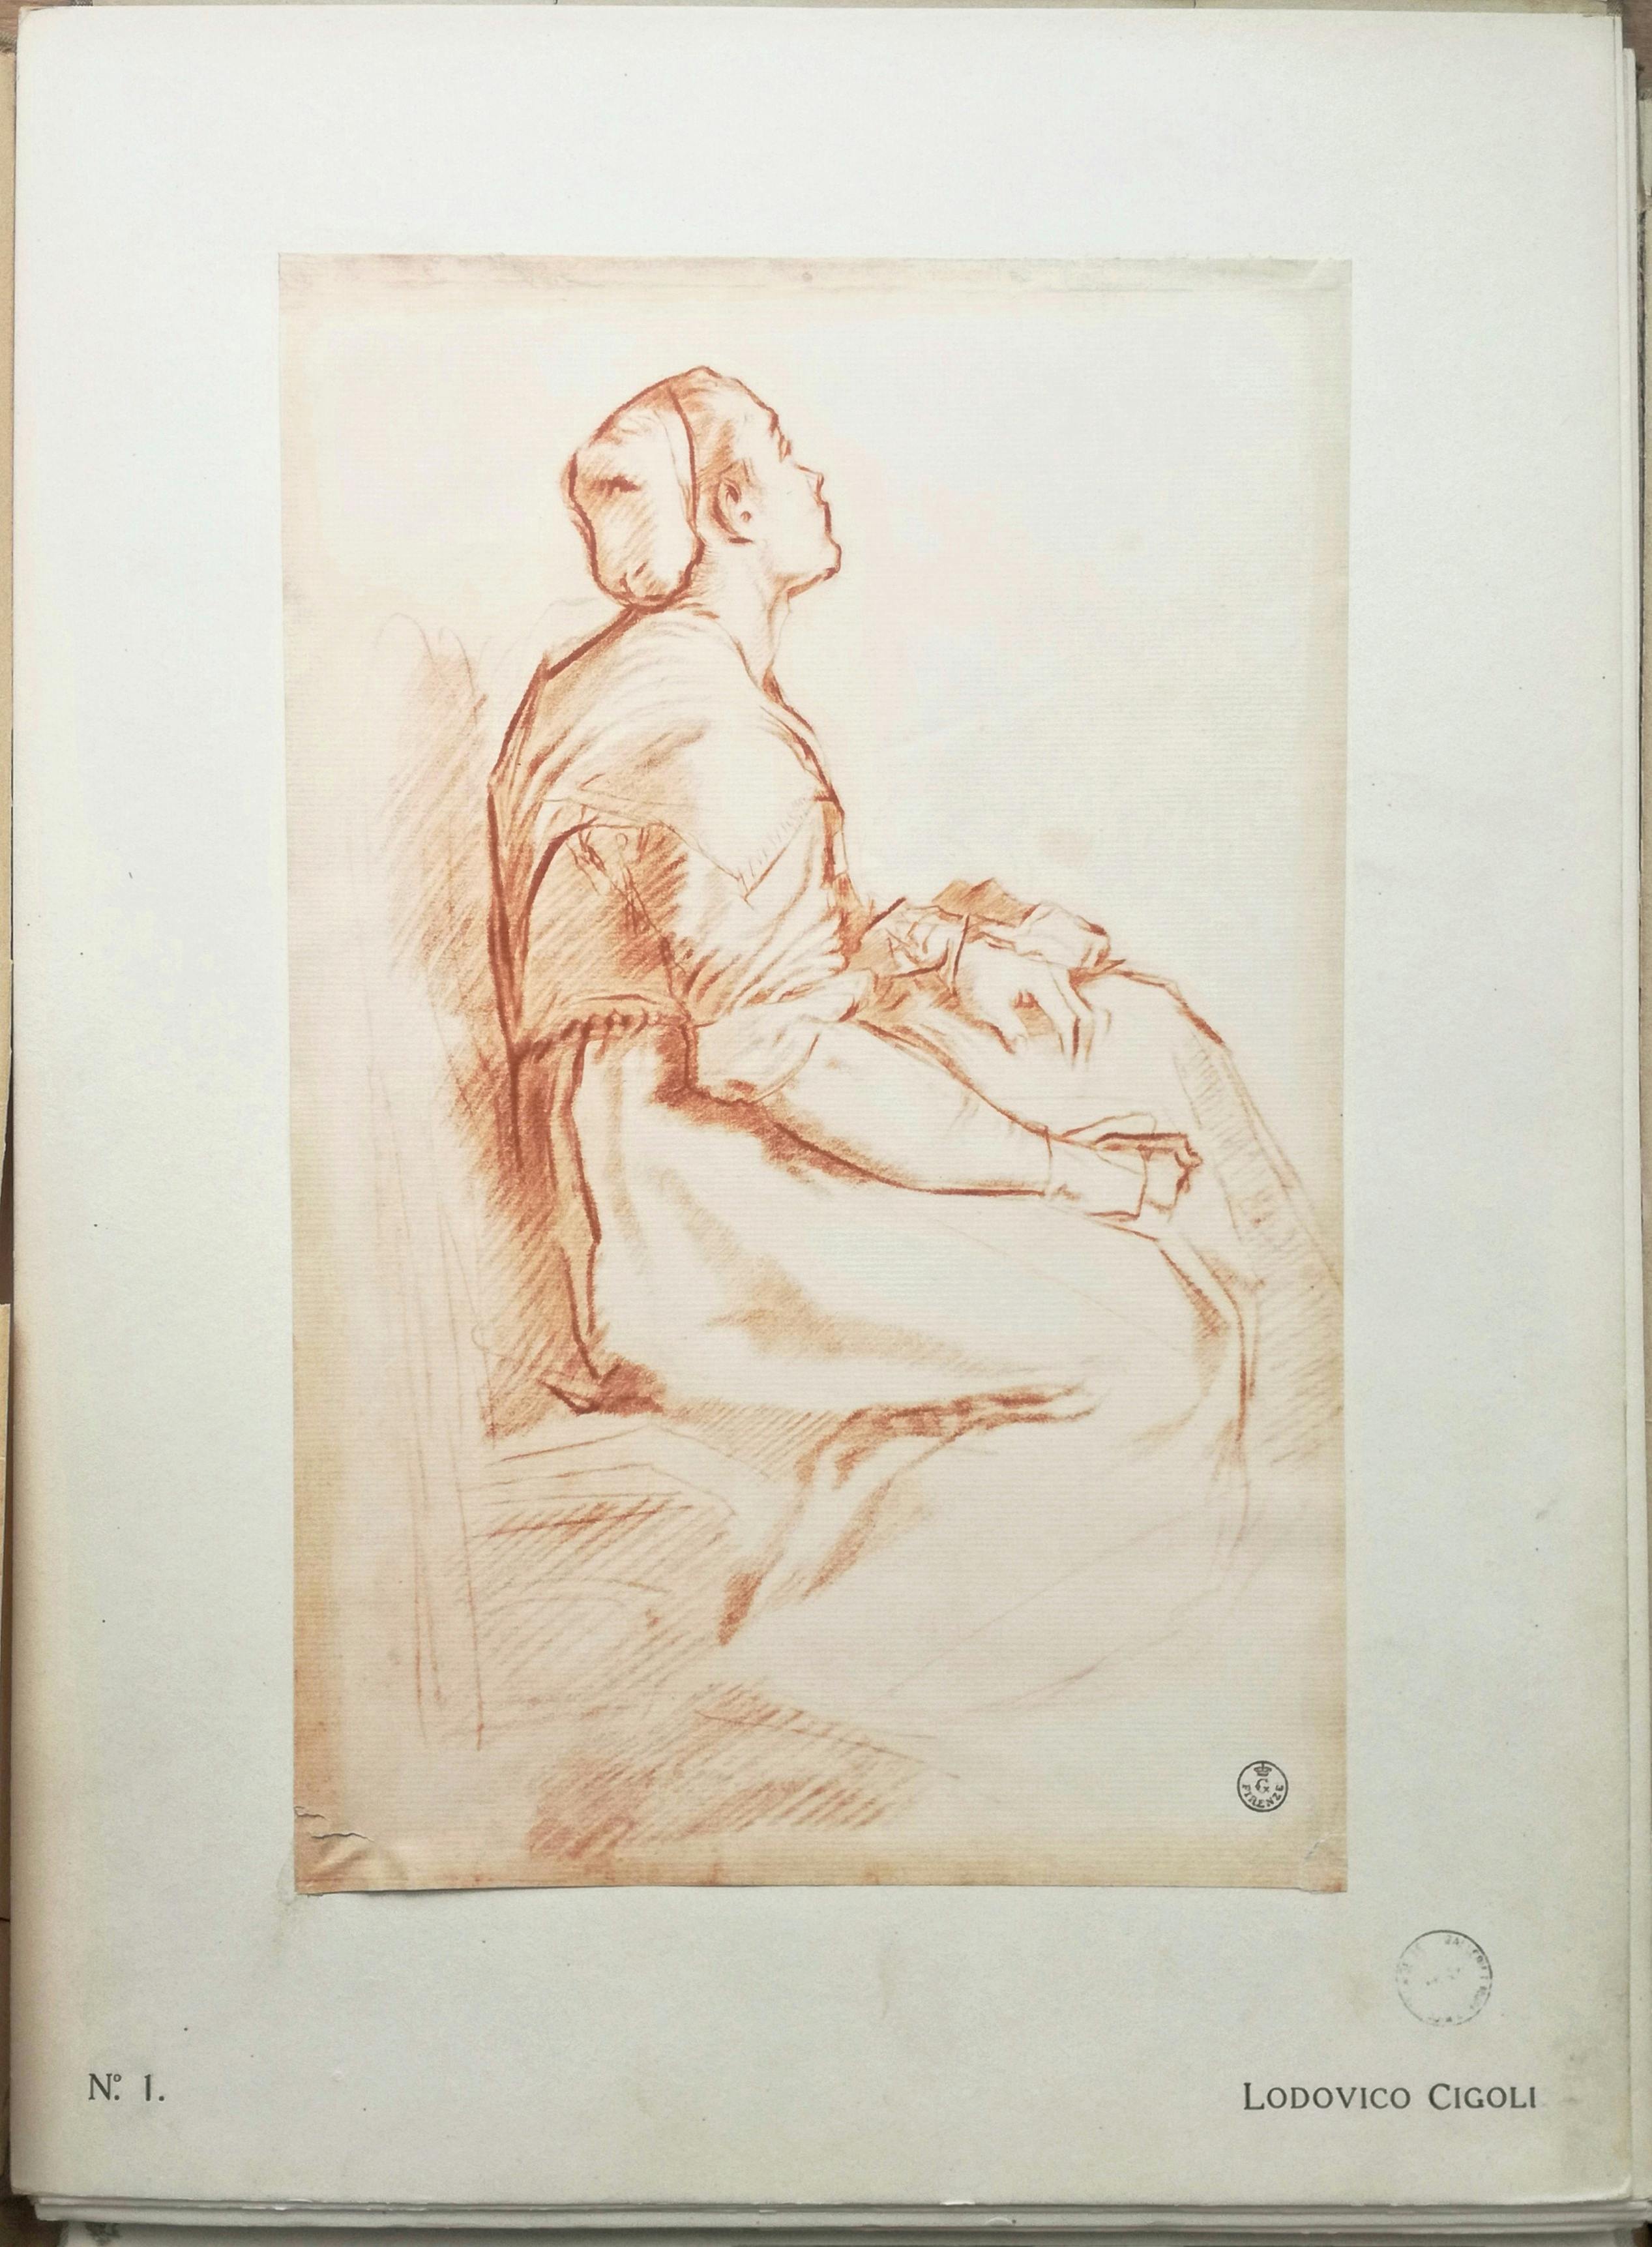 La promozione della collezione dei disegni e stampe degli Uffizi e l’impresa editoriale dei “Portafogli Olschki” (1912-1921)